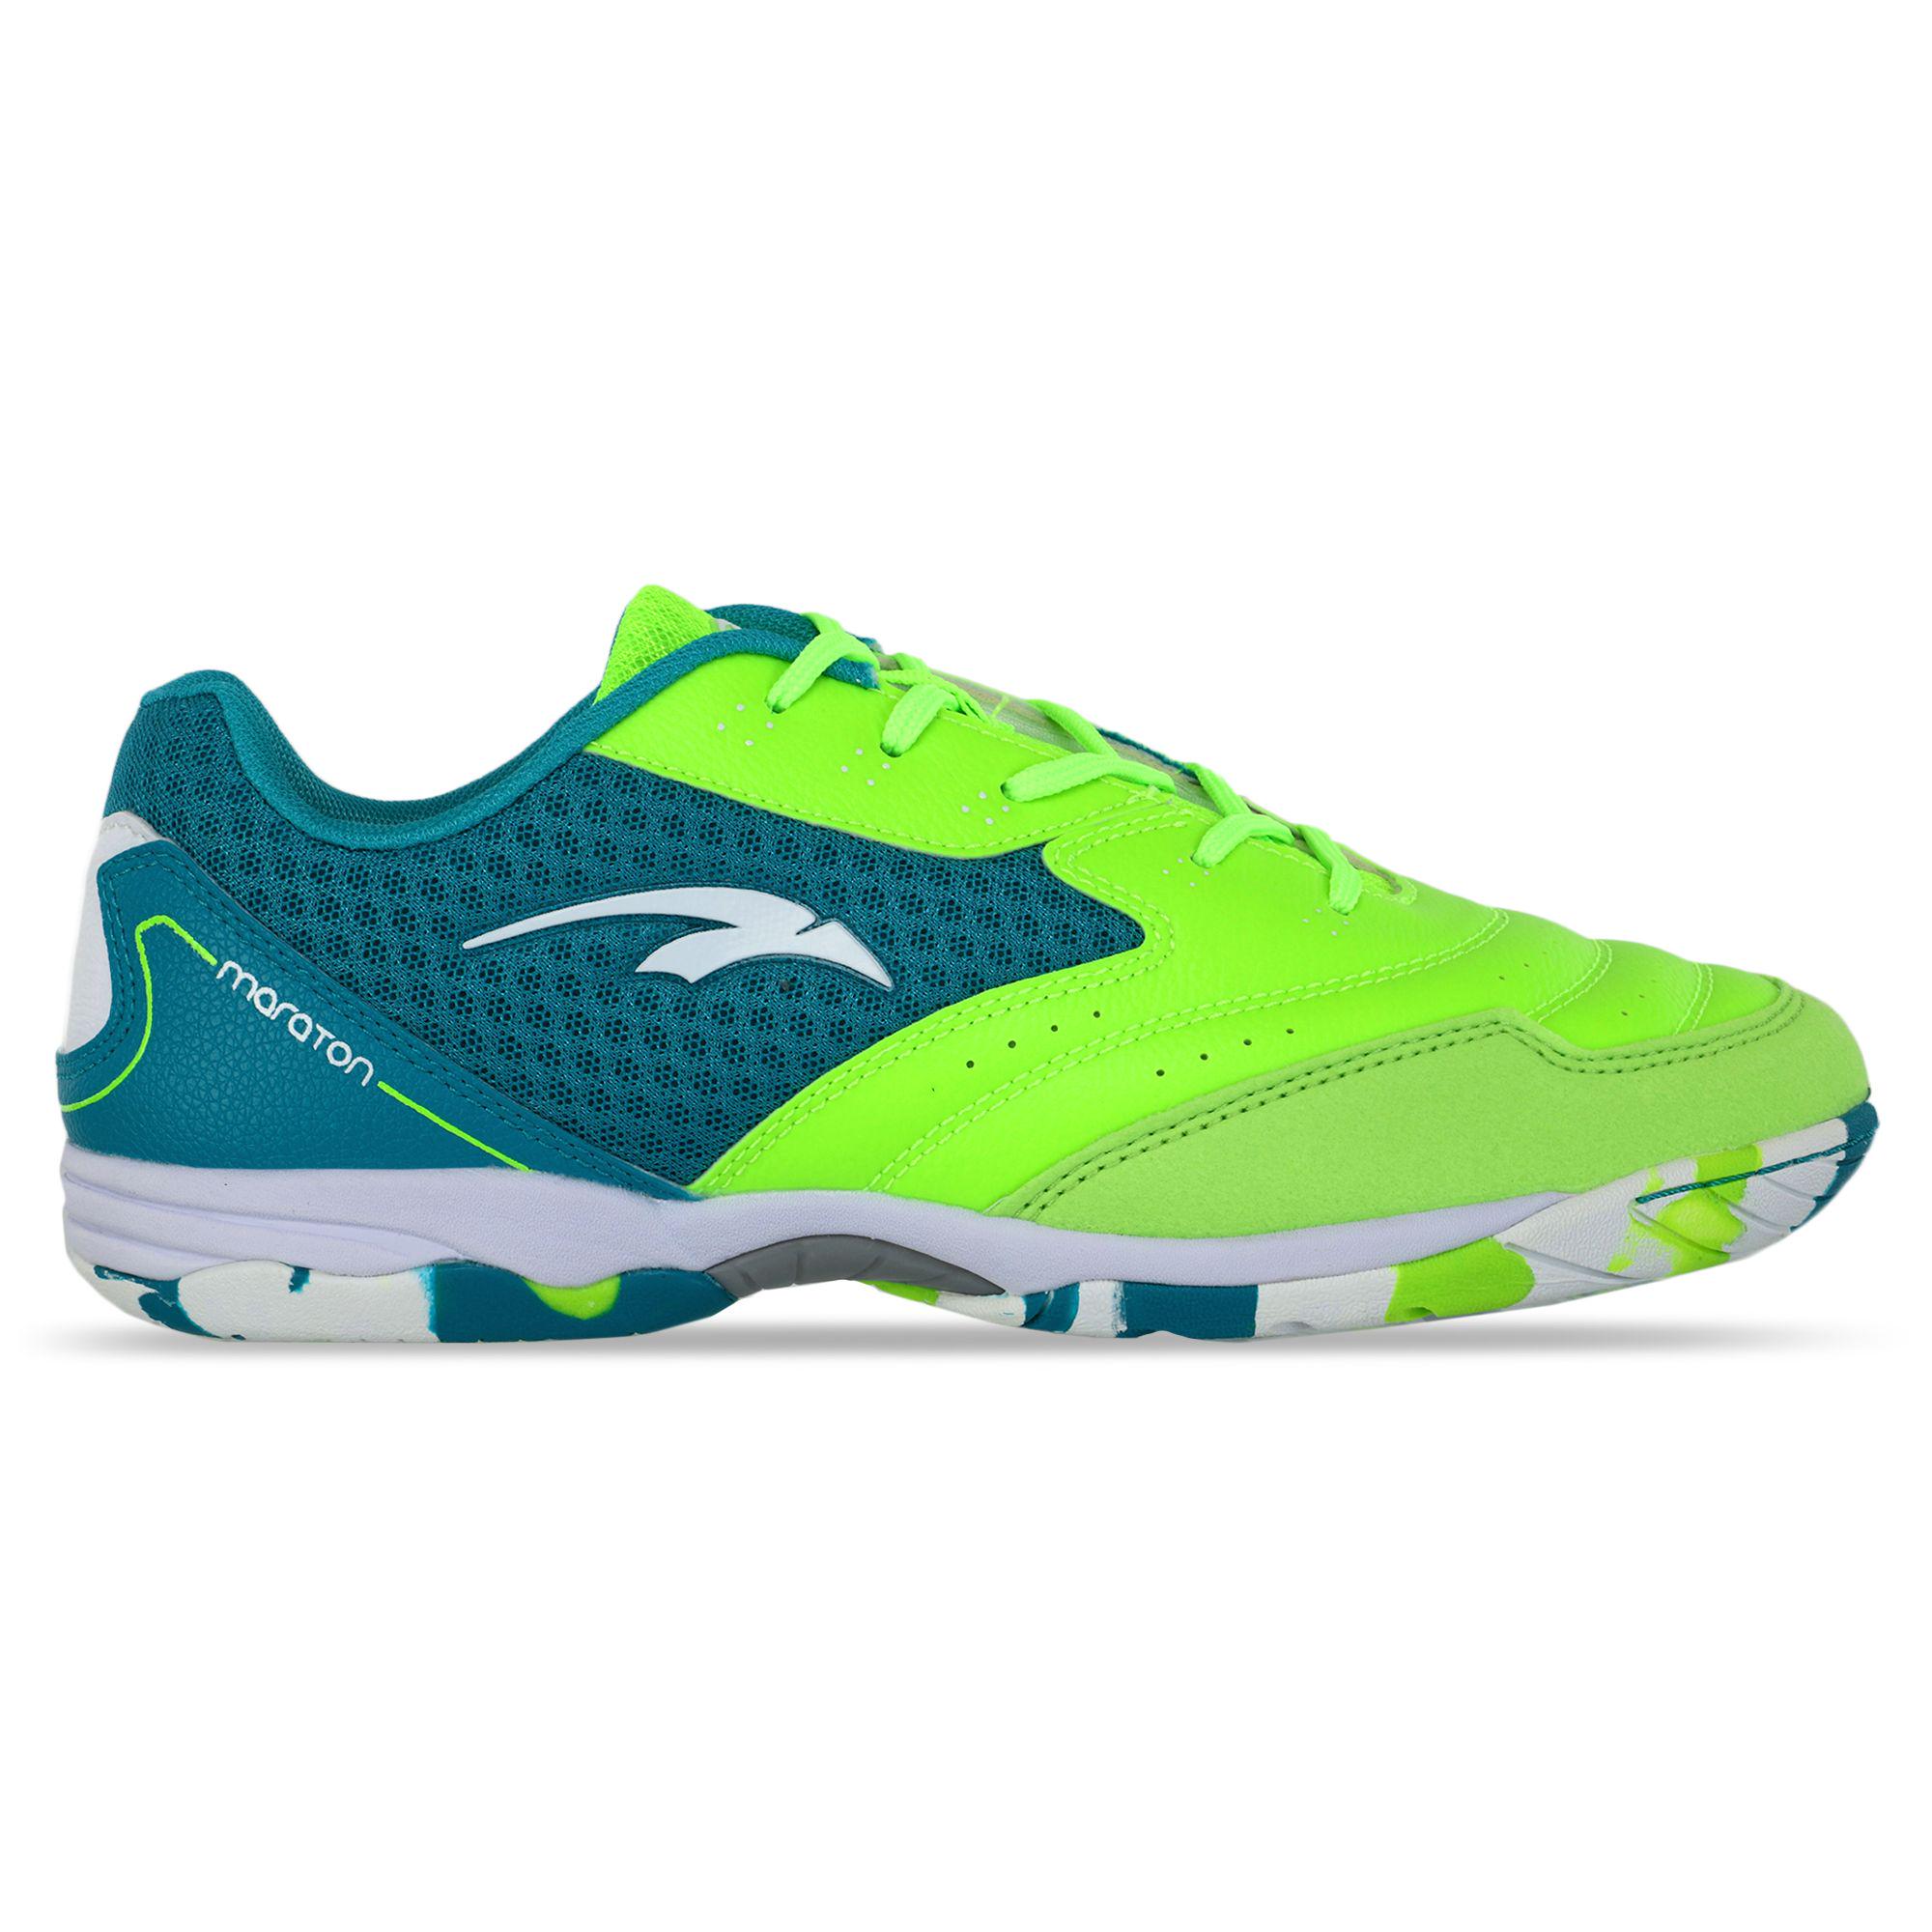 ᐉ Обувь для футзала мужская Maraton 230510-1 р. 41 Салатовый/Голубой  (AM0002760)